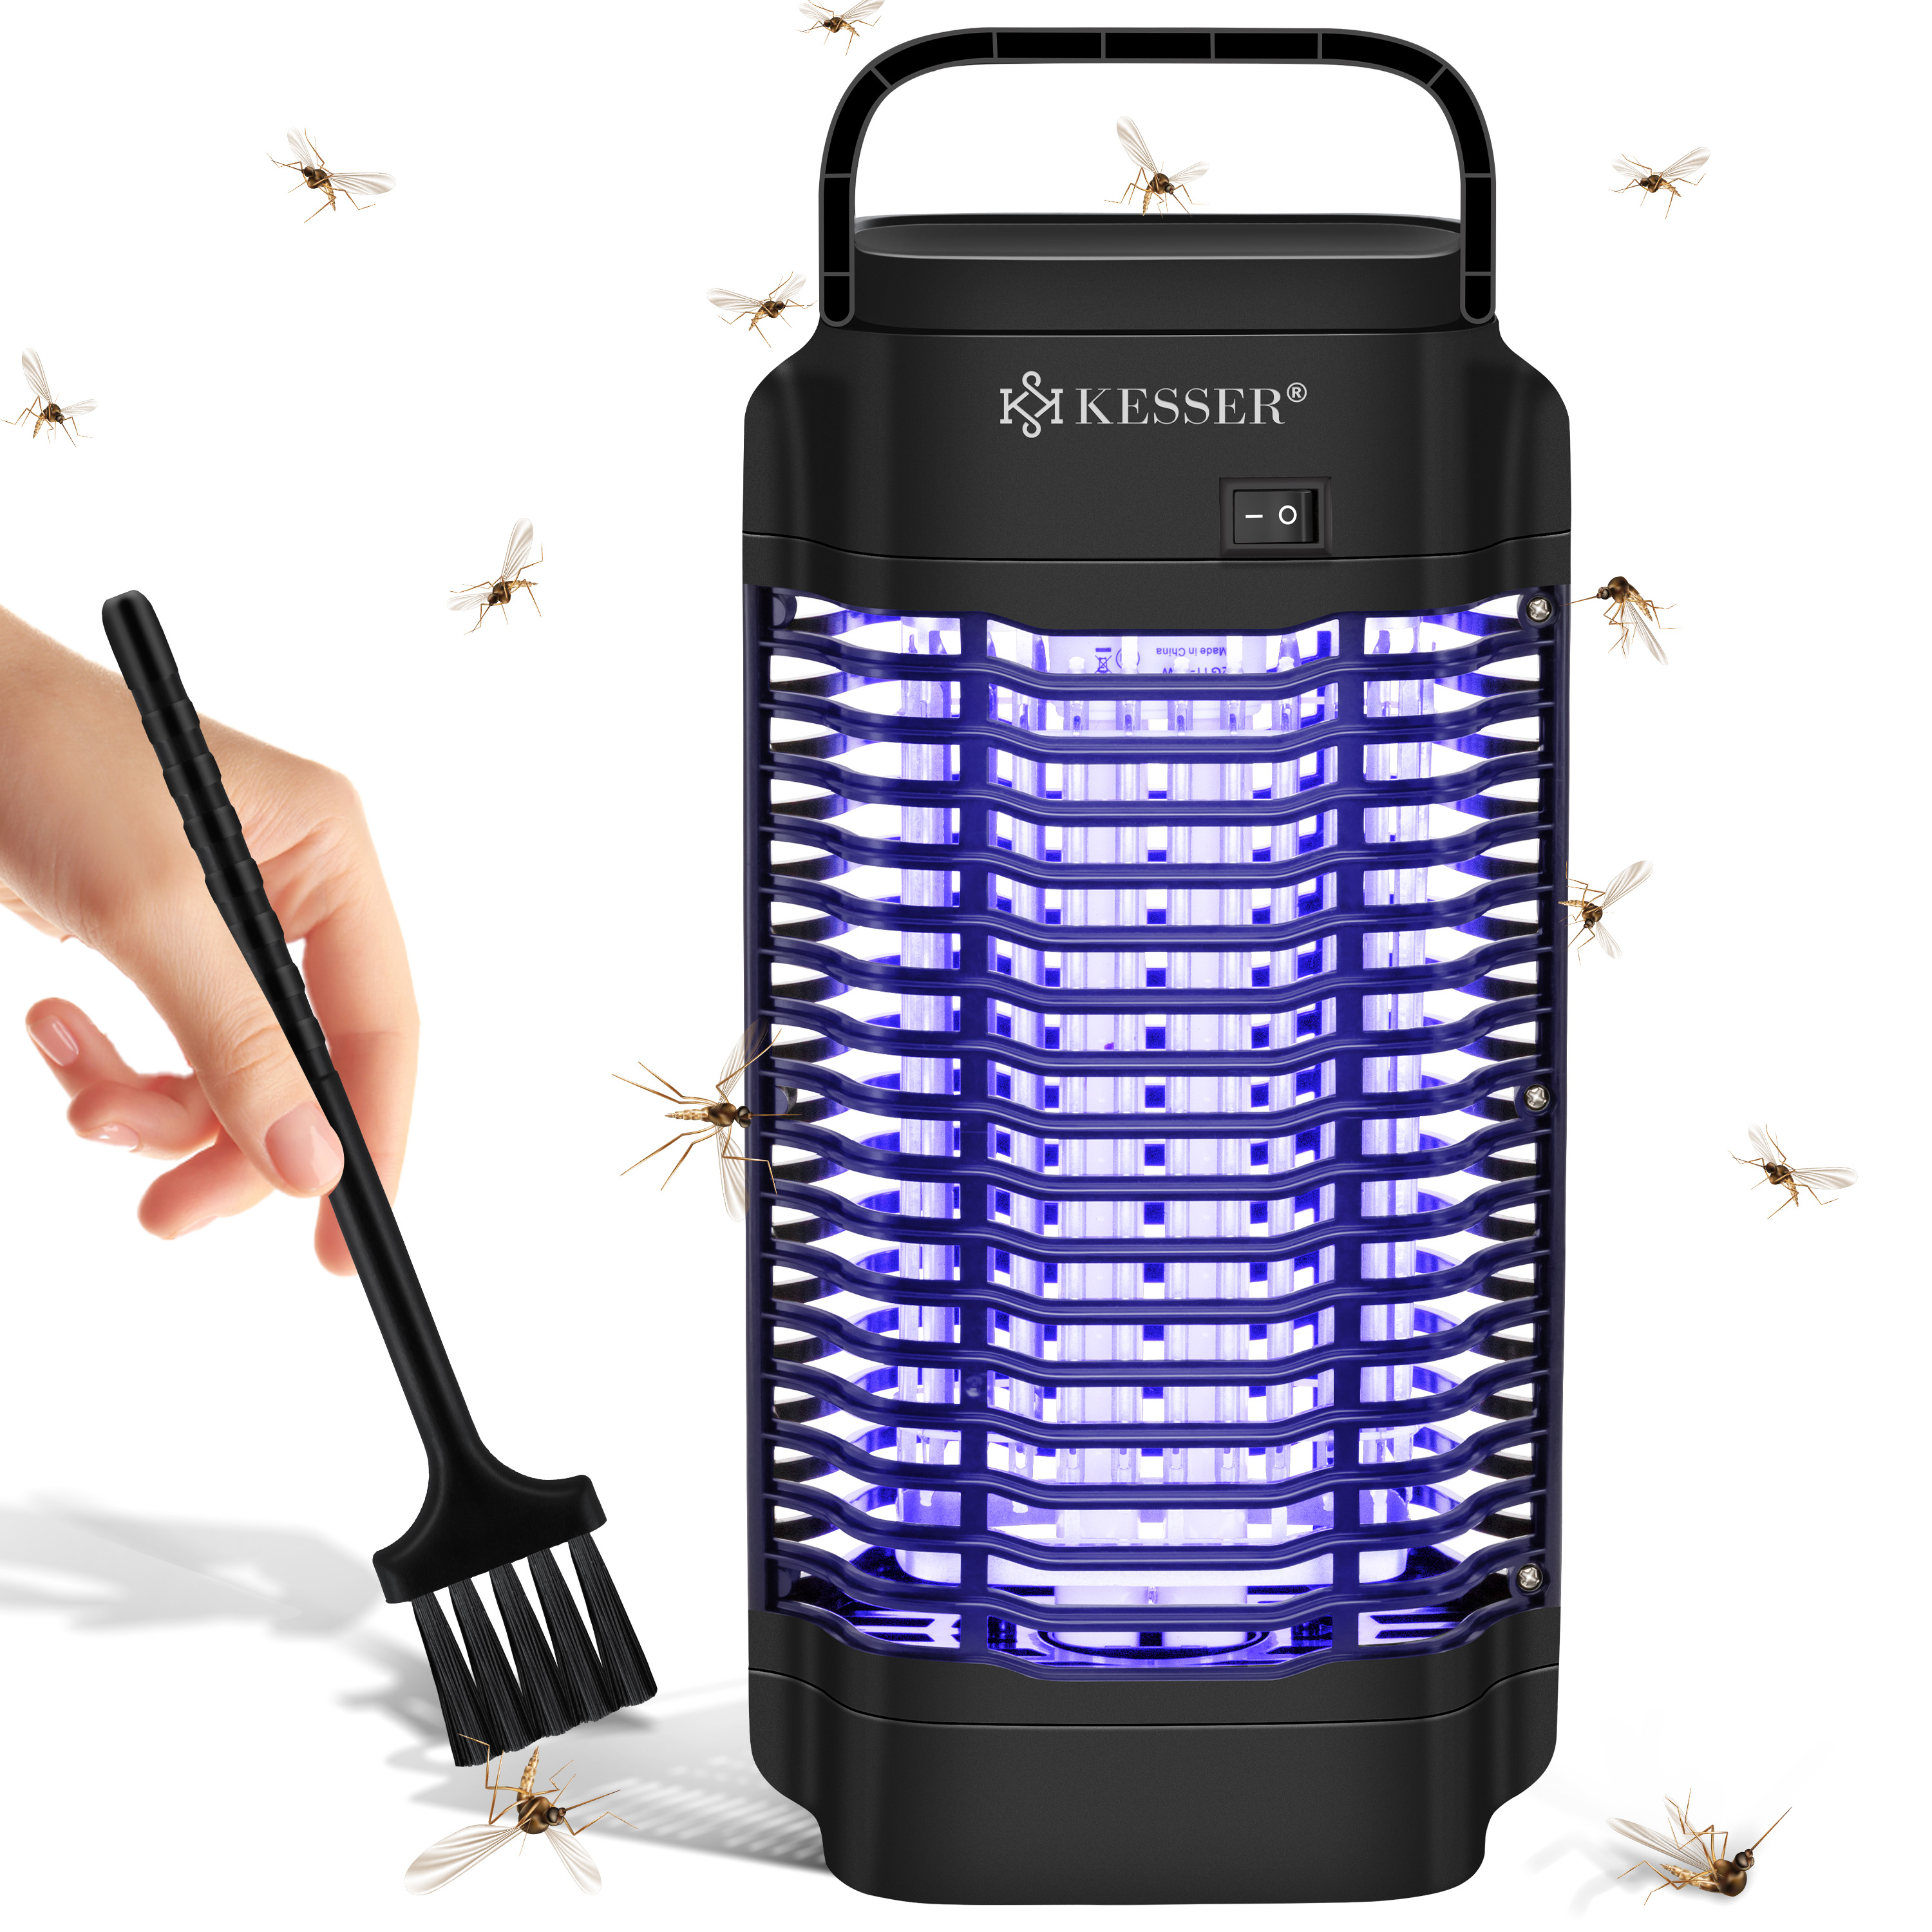 Moskito Killer Insektenvernichter Elektrisch UV LED Lampe Fliegenfänger Bürste 